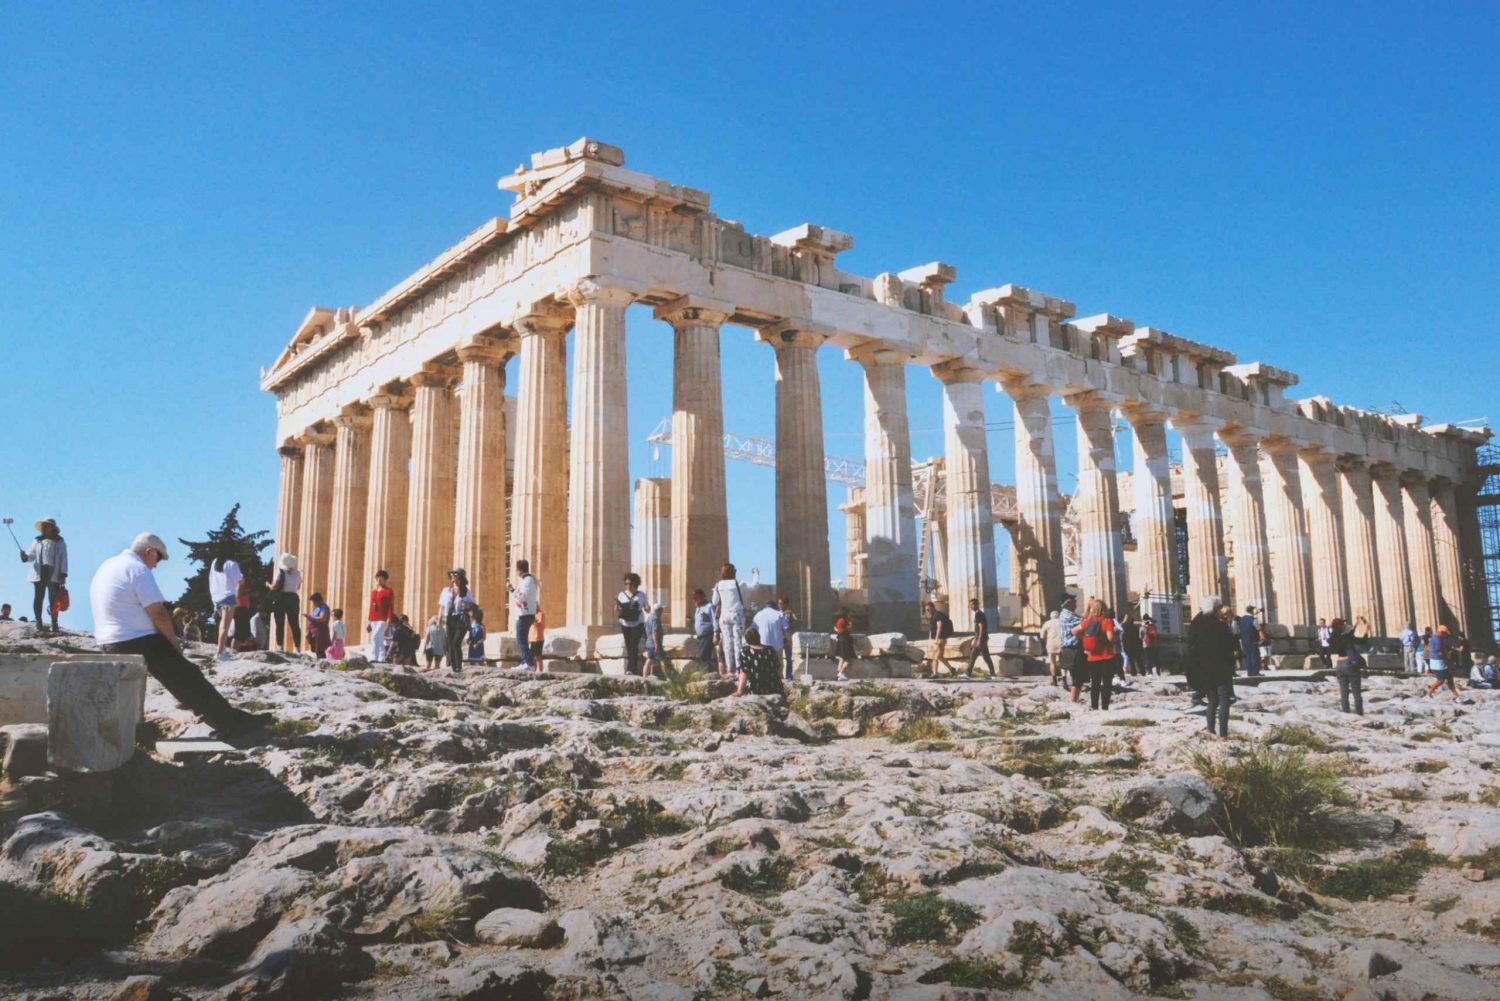 Acropolis , Parthenon and Plaka, Monastiraki walking tour